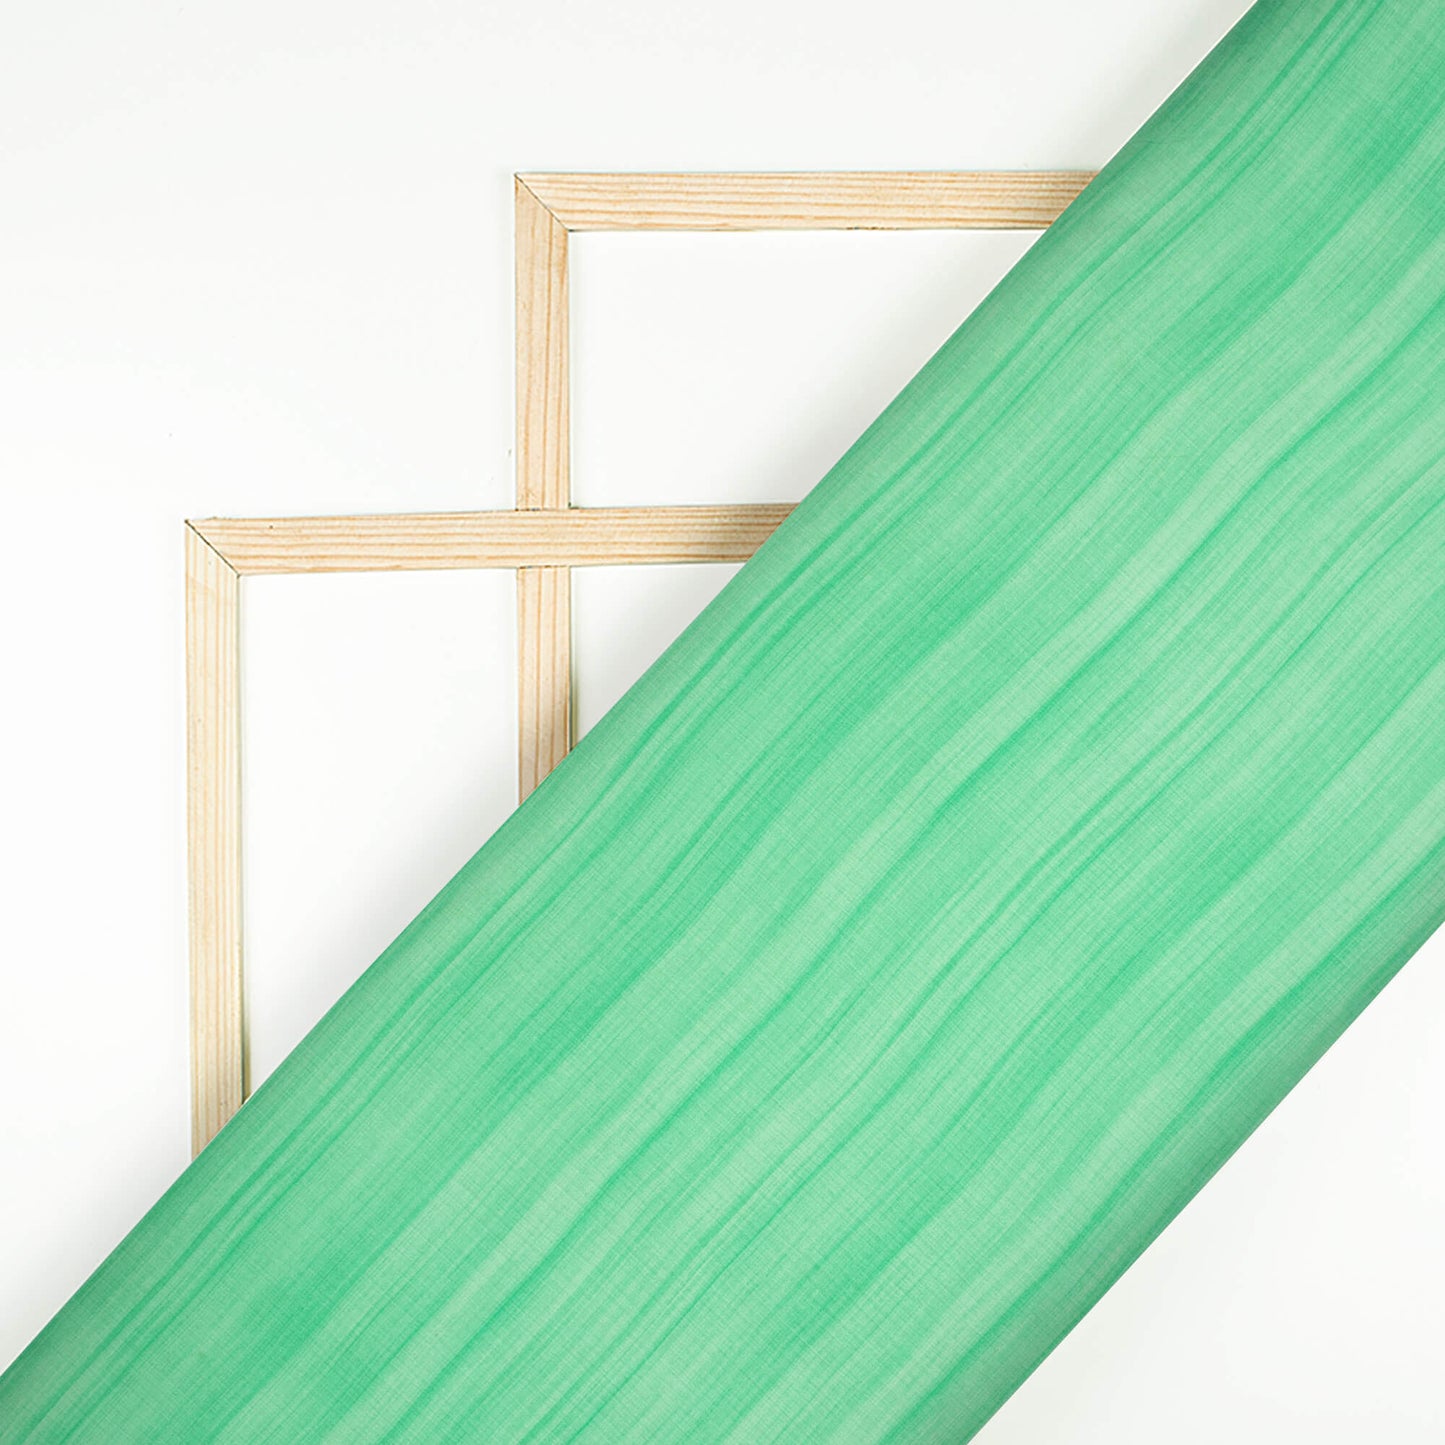 Seaform Green Texture Pattern Digital Print Chiffon Satin Fabric